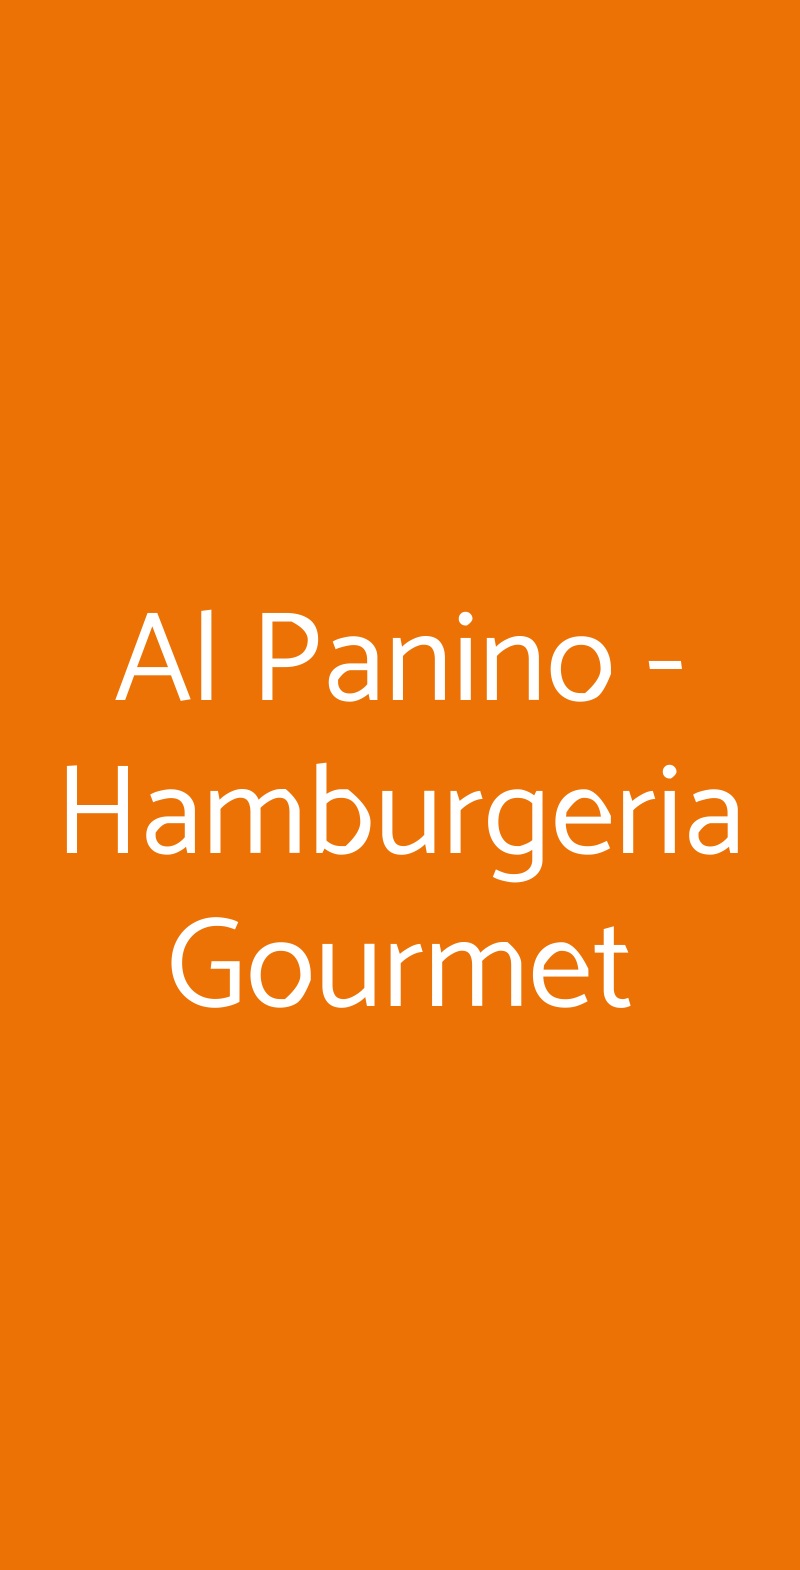 Al Panino - Hamburgeria Gourmet Roma menù 1 pagina